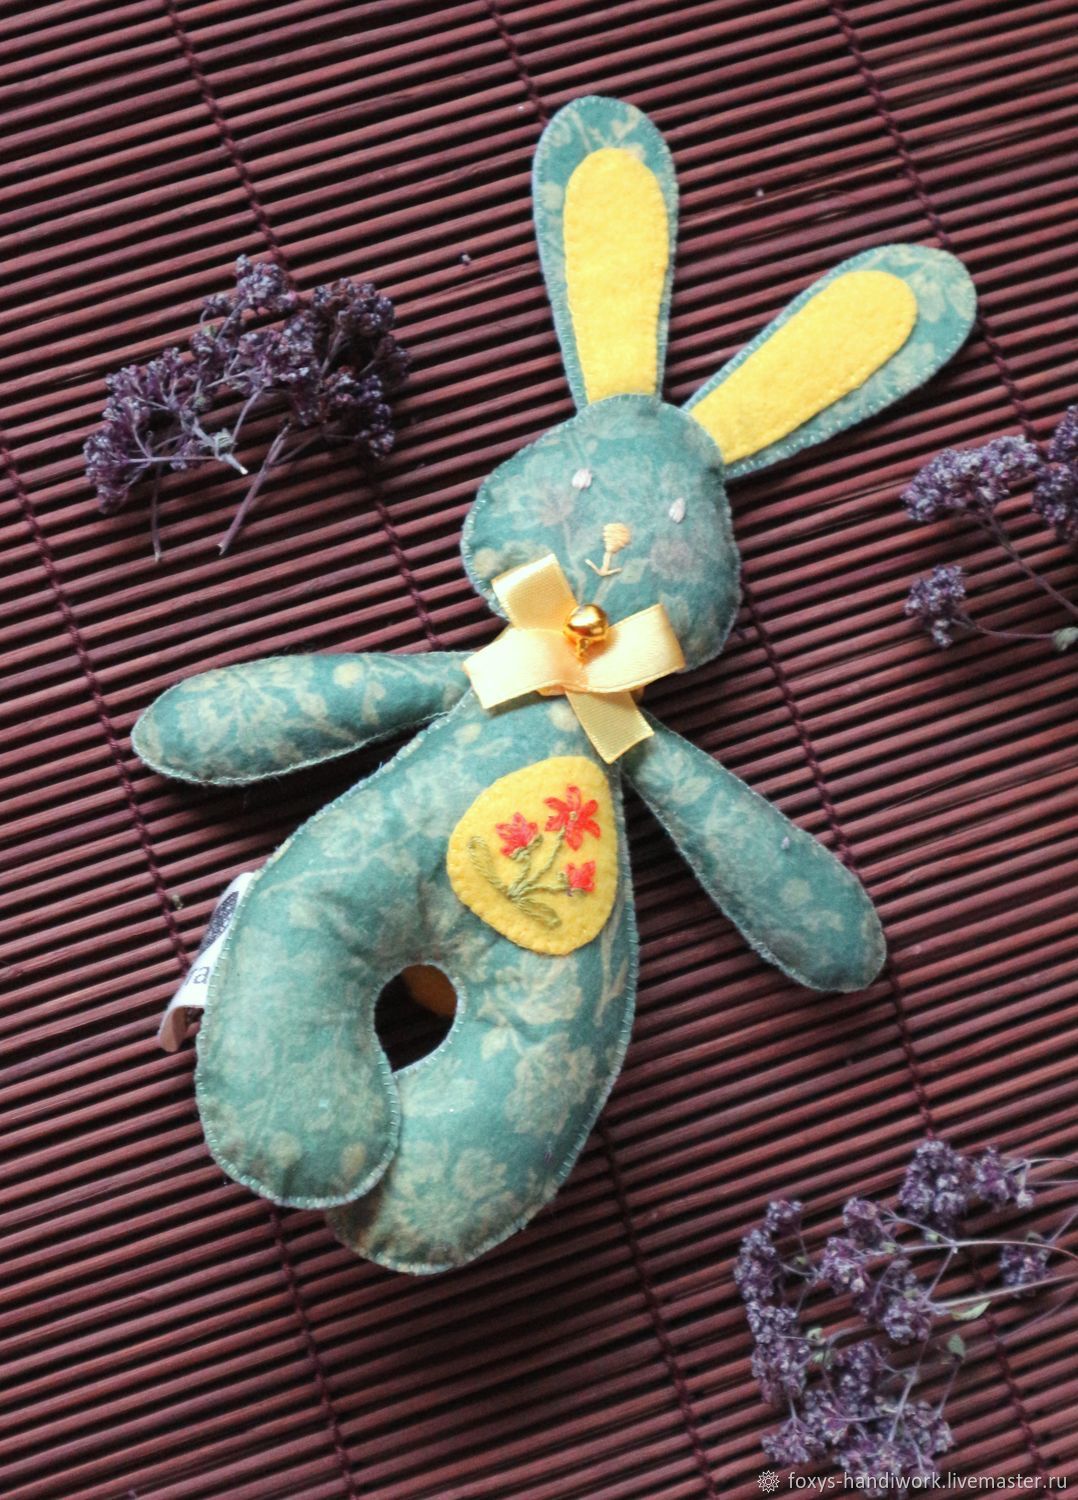 Пасхальный заяц из фетра с цветочным принтом и ручной вышивкой, Мягкие игрушки, Тула,  Фото №1